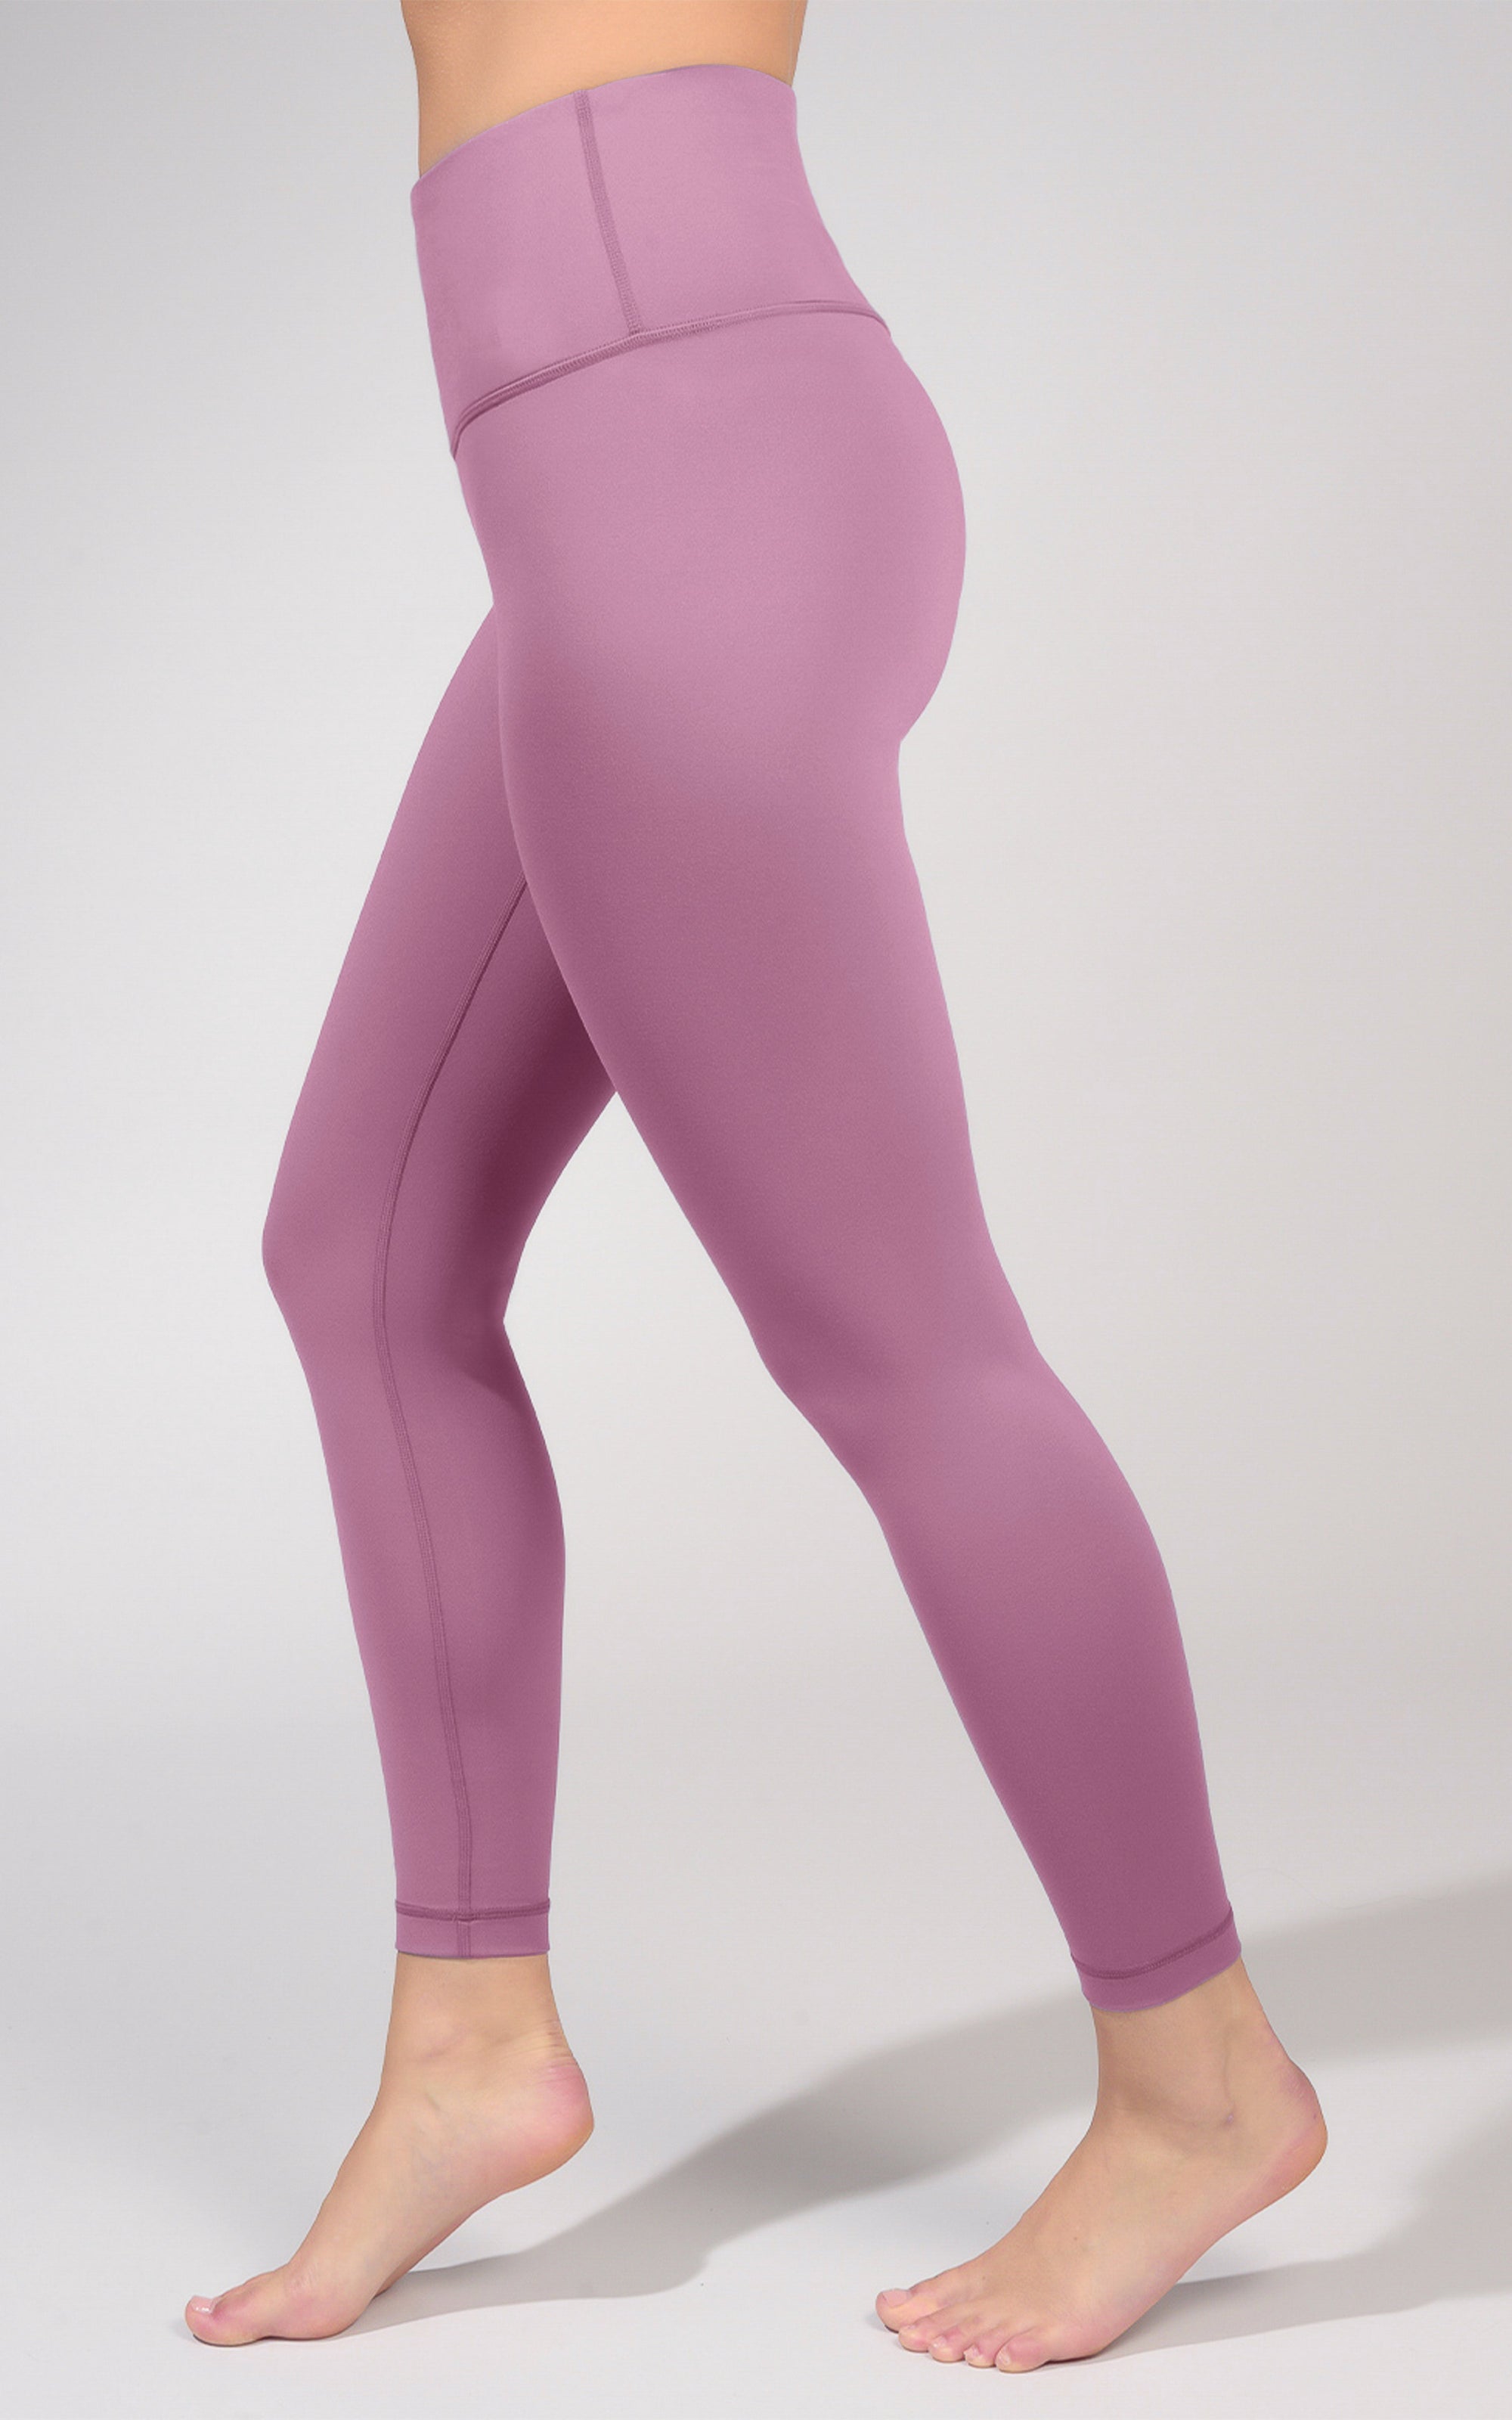 Yogalicious, Pants & Jumpsuits, Yogalicious Lux Polar Lux Leggings Size Xl  Mauve Wine Pfy787 78 New Hi Rise